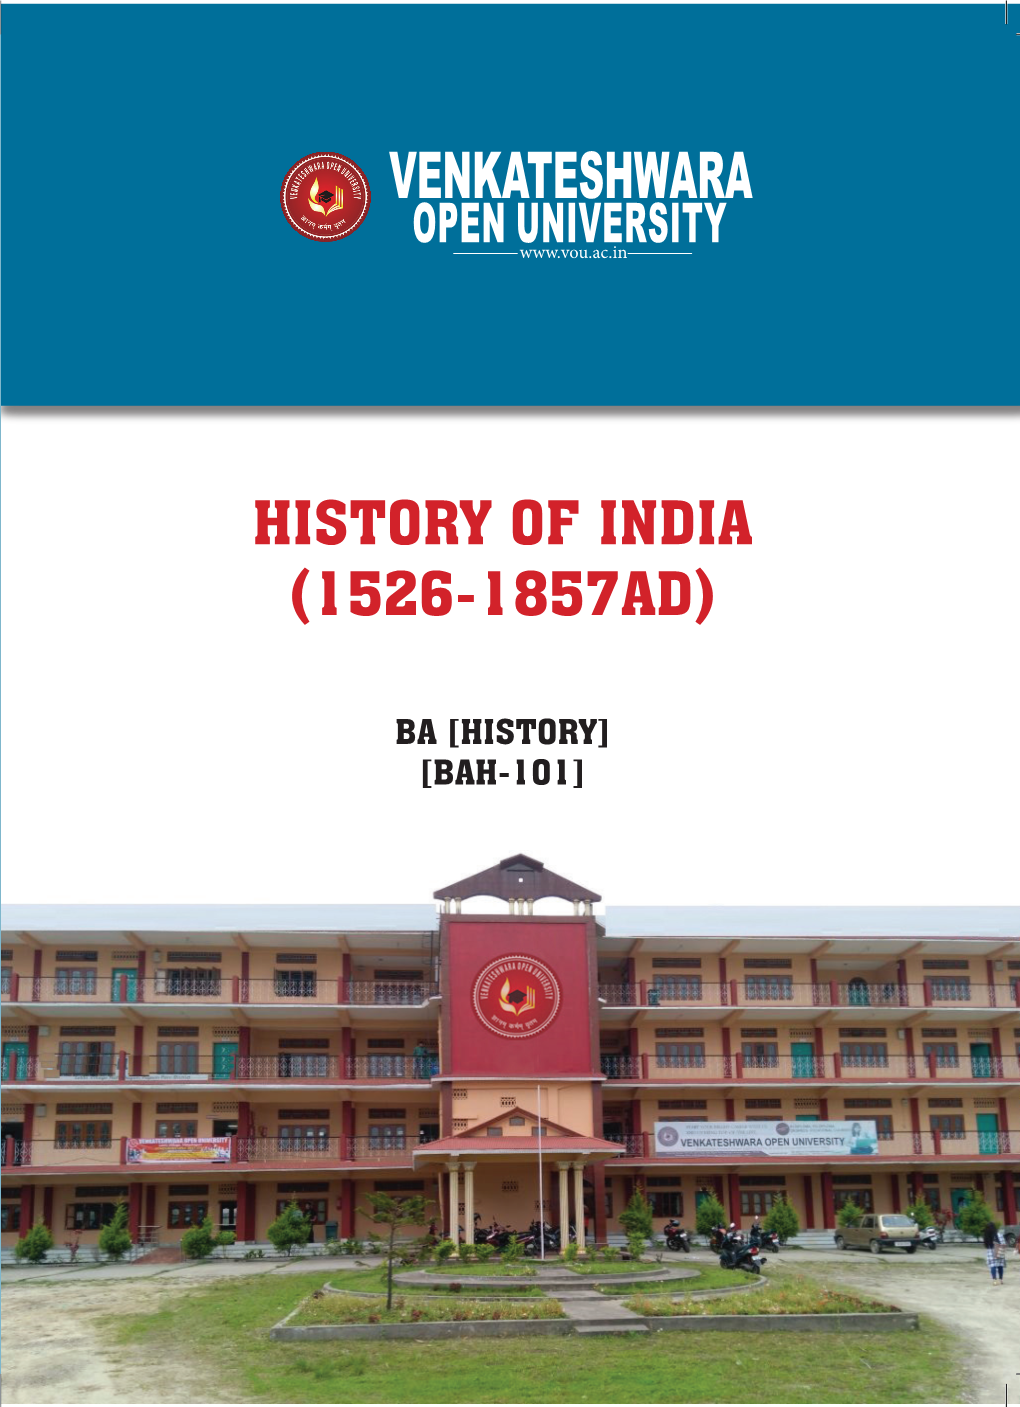 BAH 101 History of India BA History.Pdf